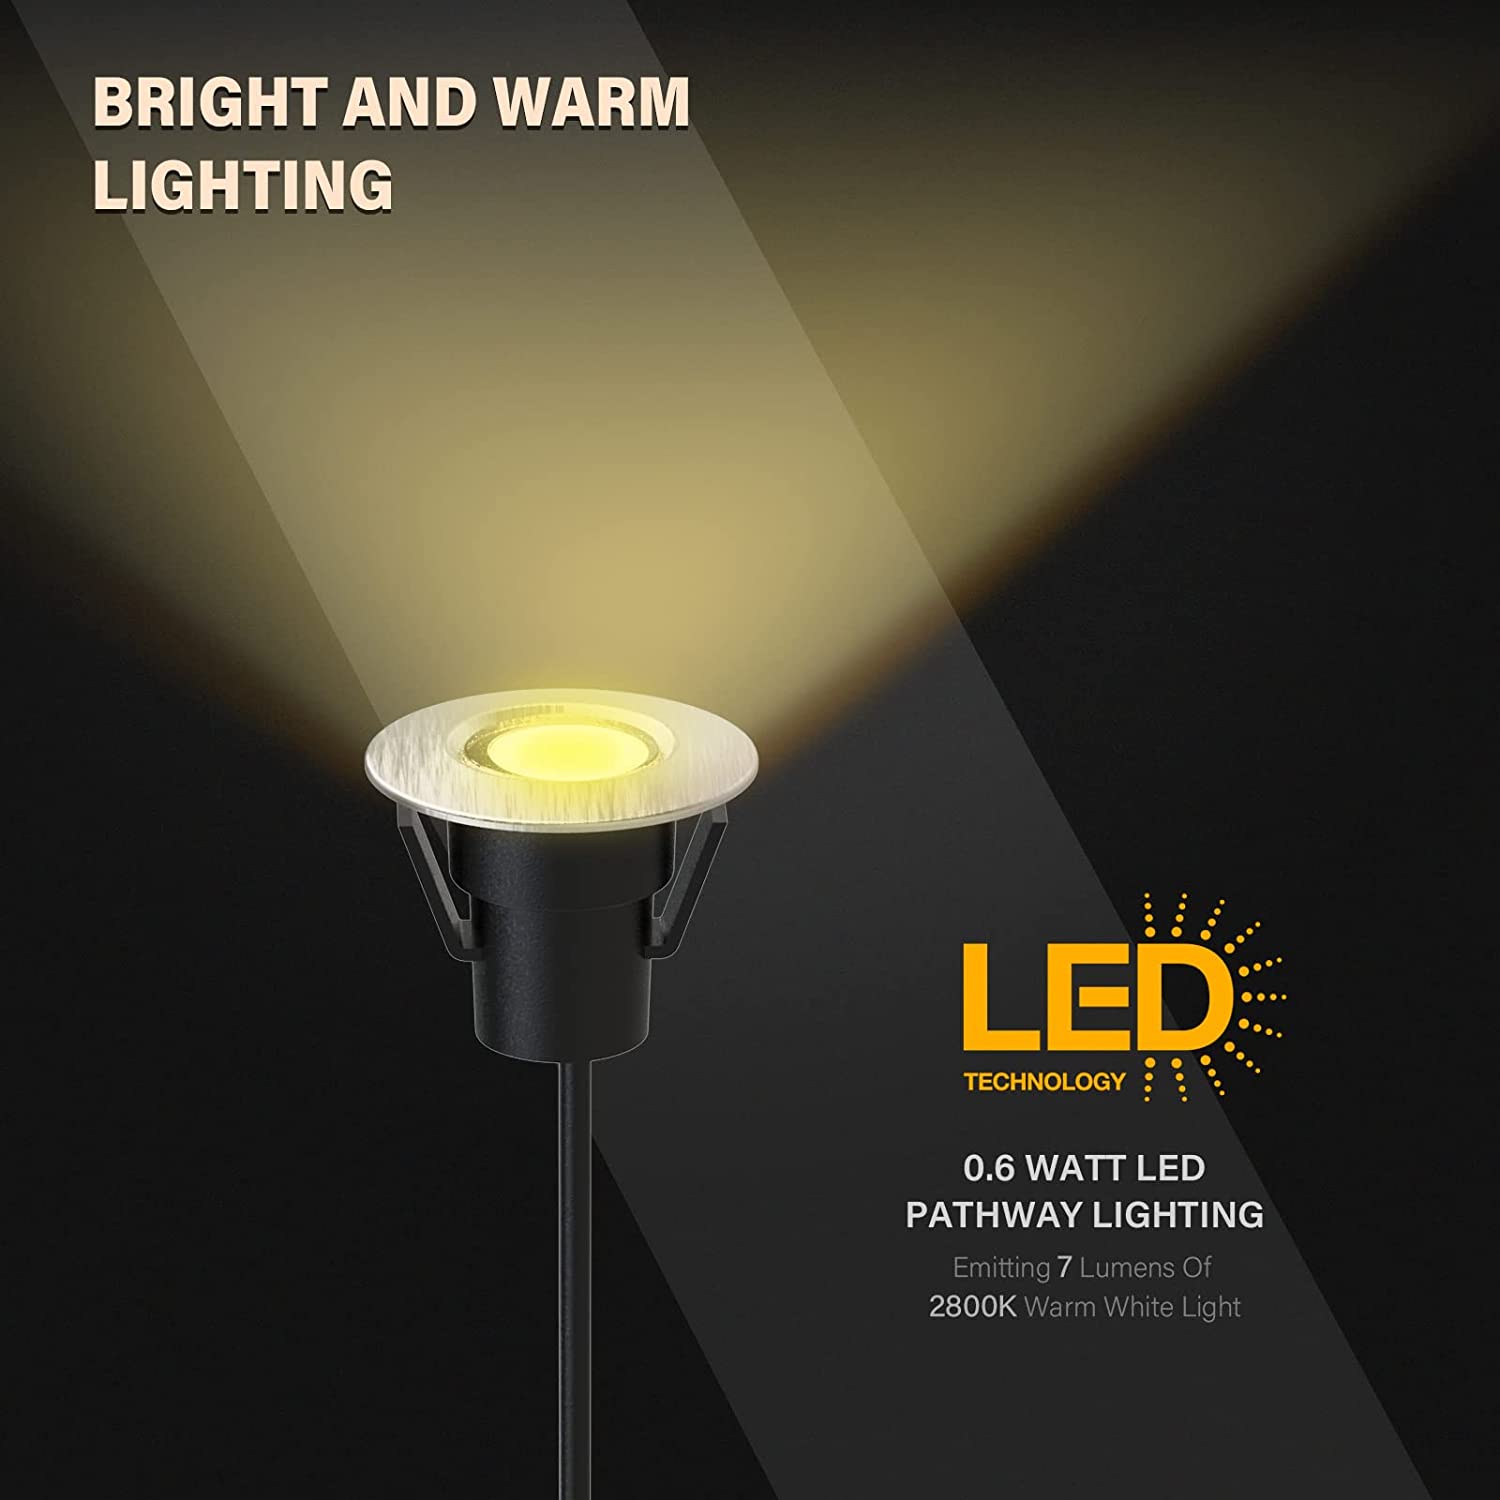 Malibu 6 PK LED Deck Lights Low Voltage Landscape Light In Ground Ligh -  Venus Manufacturing